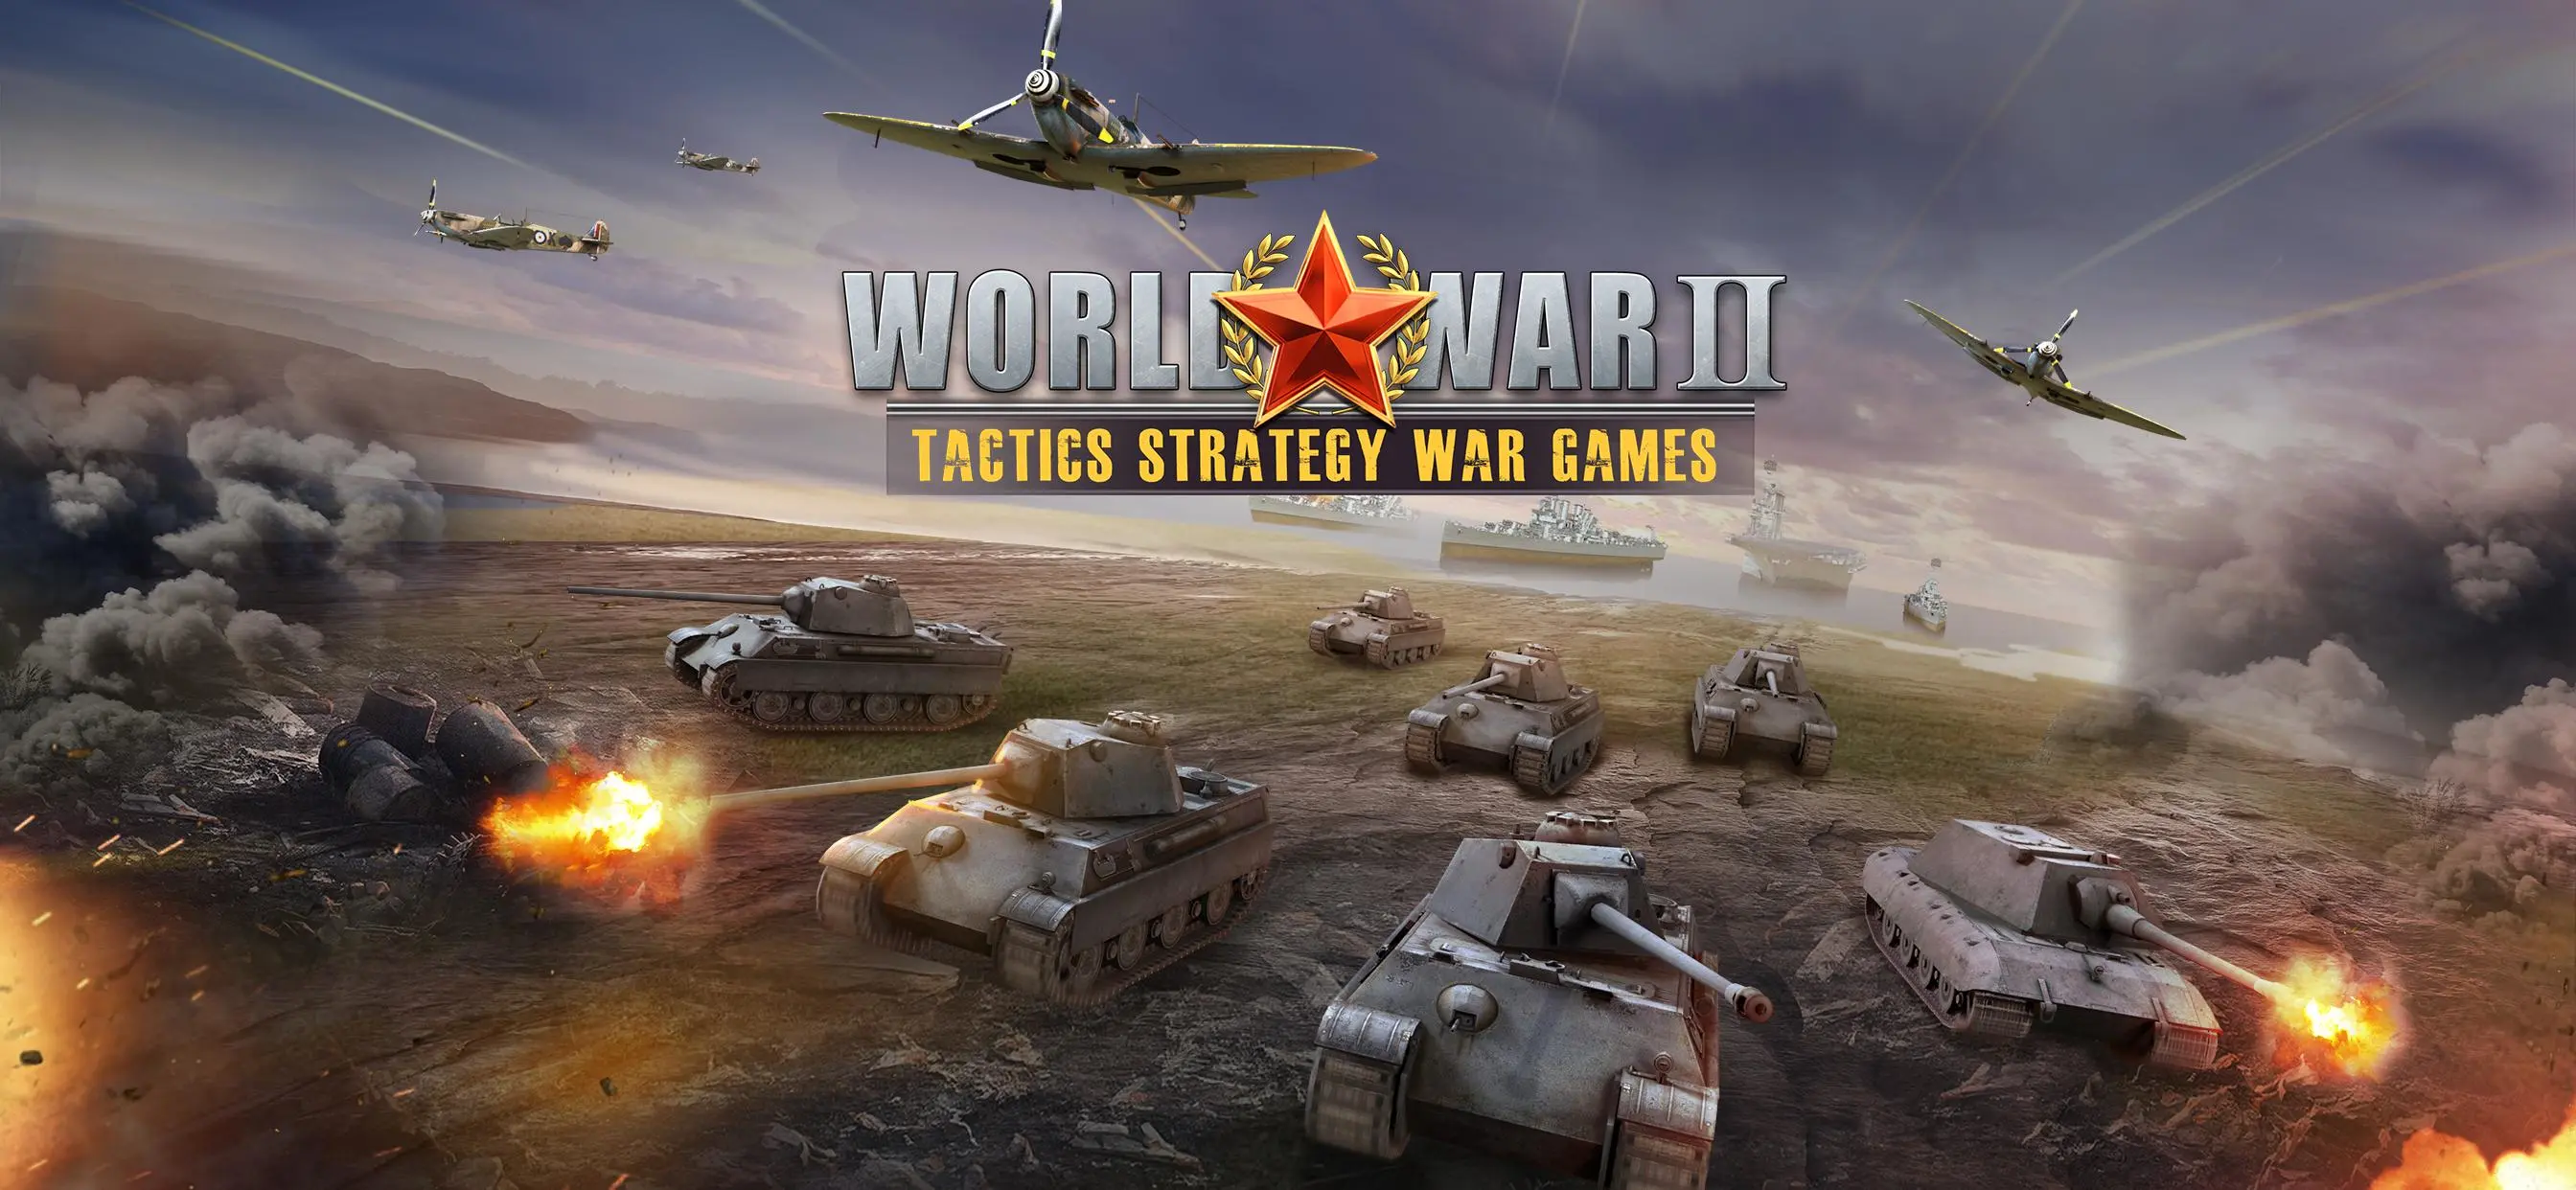 Tải Xuống Ww2:Trận Chiến Trên Pc | Gameloop Chính Thức